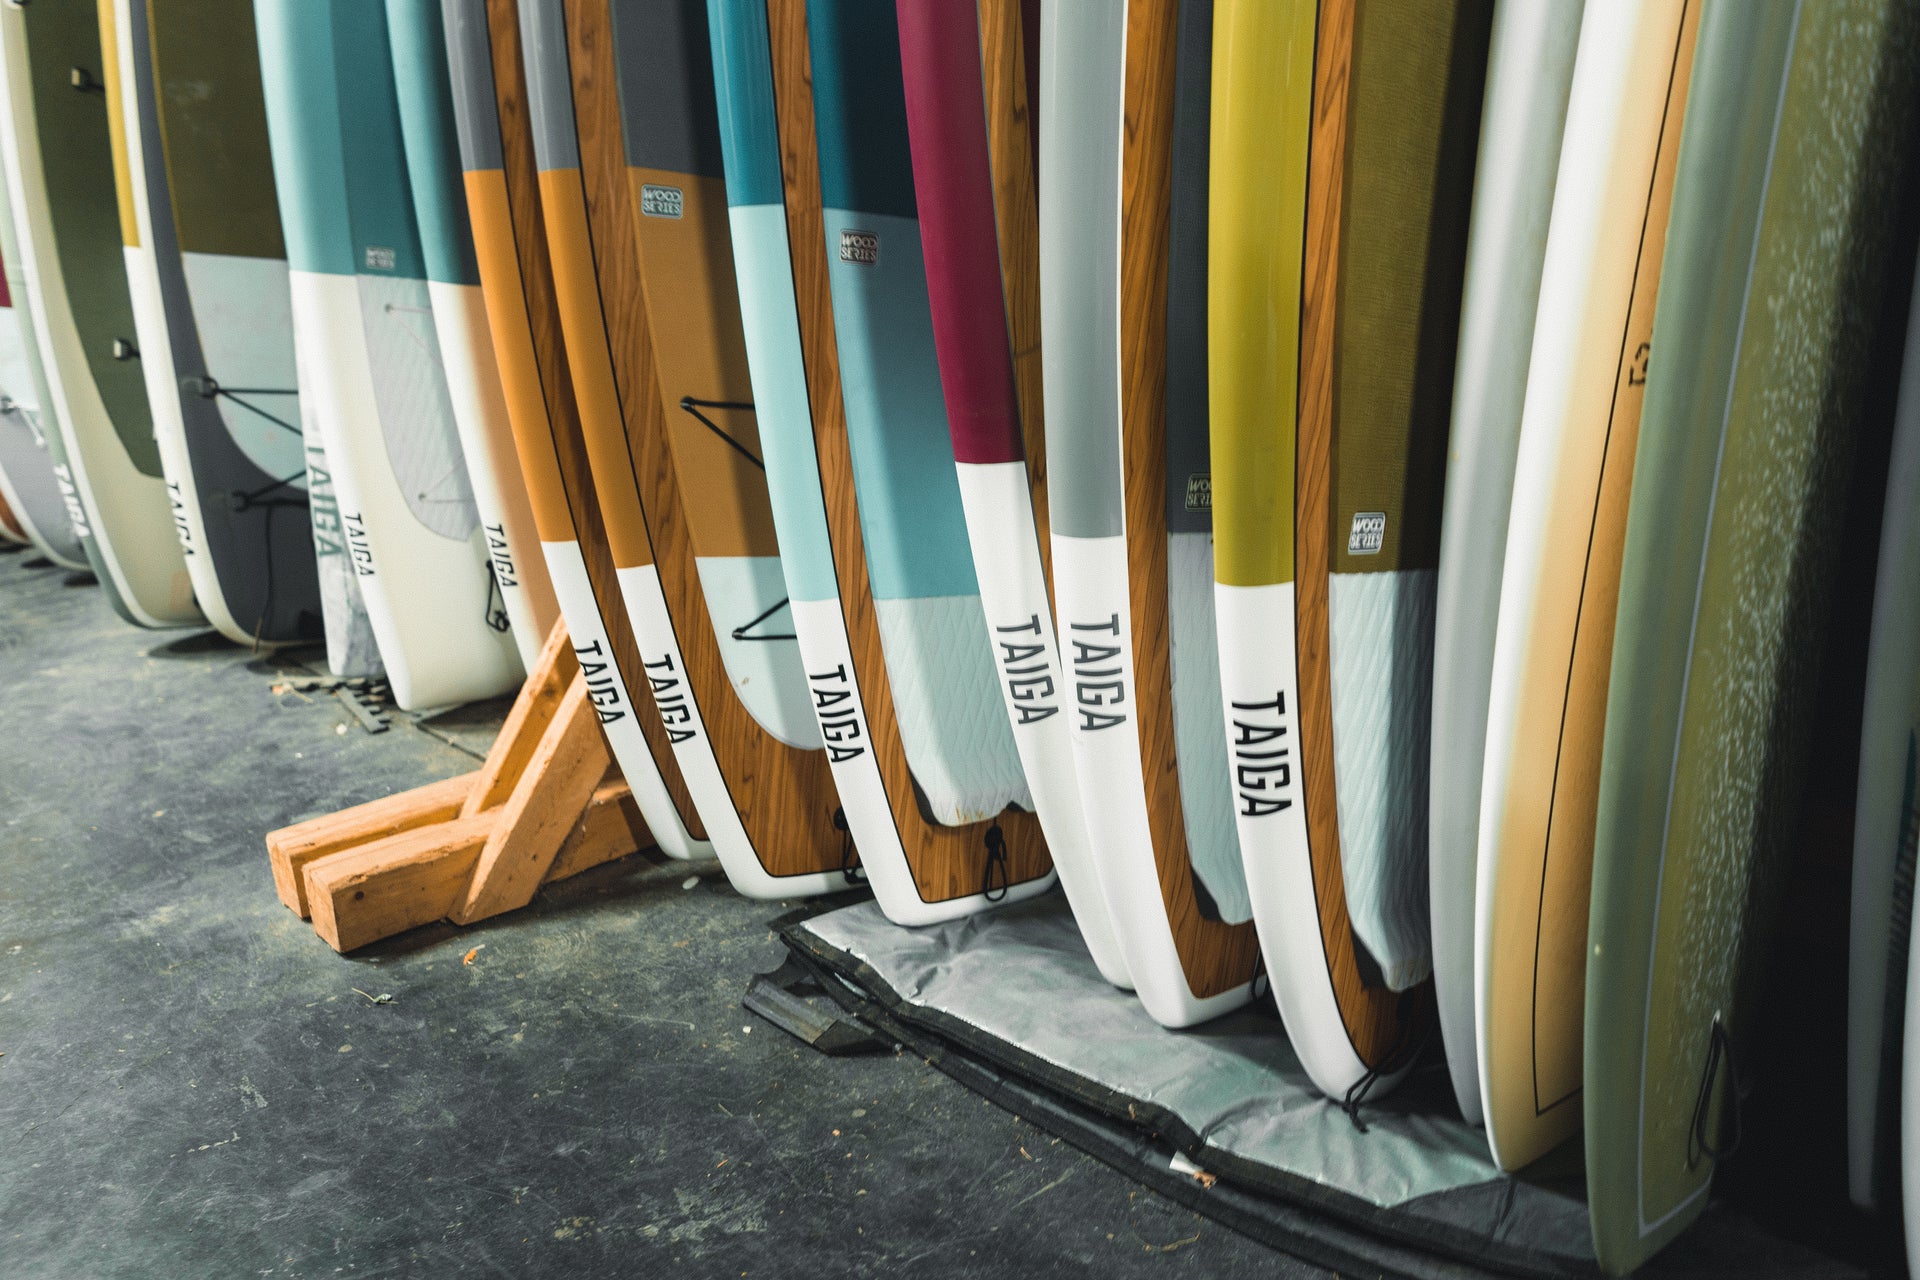 OMOUBOI Planche de surf gonflable Aides à la natation - Temu Canada